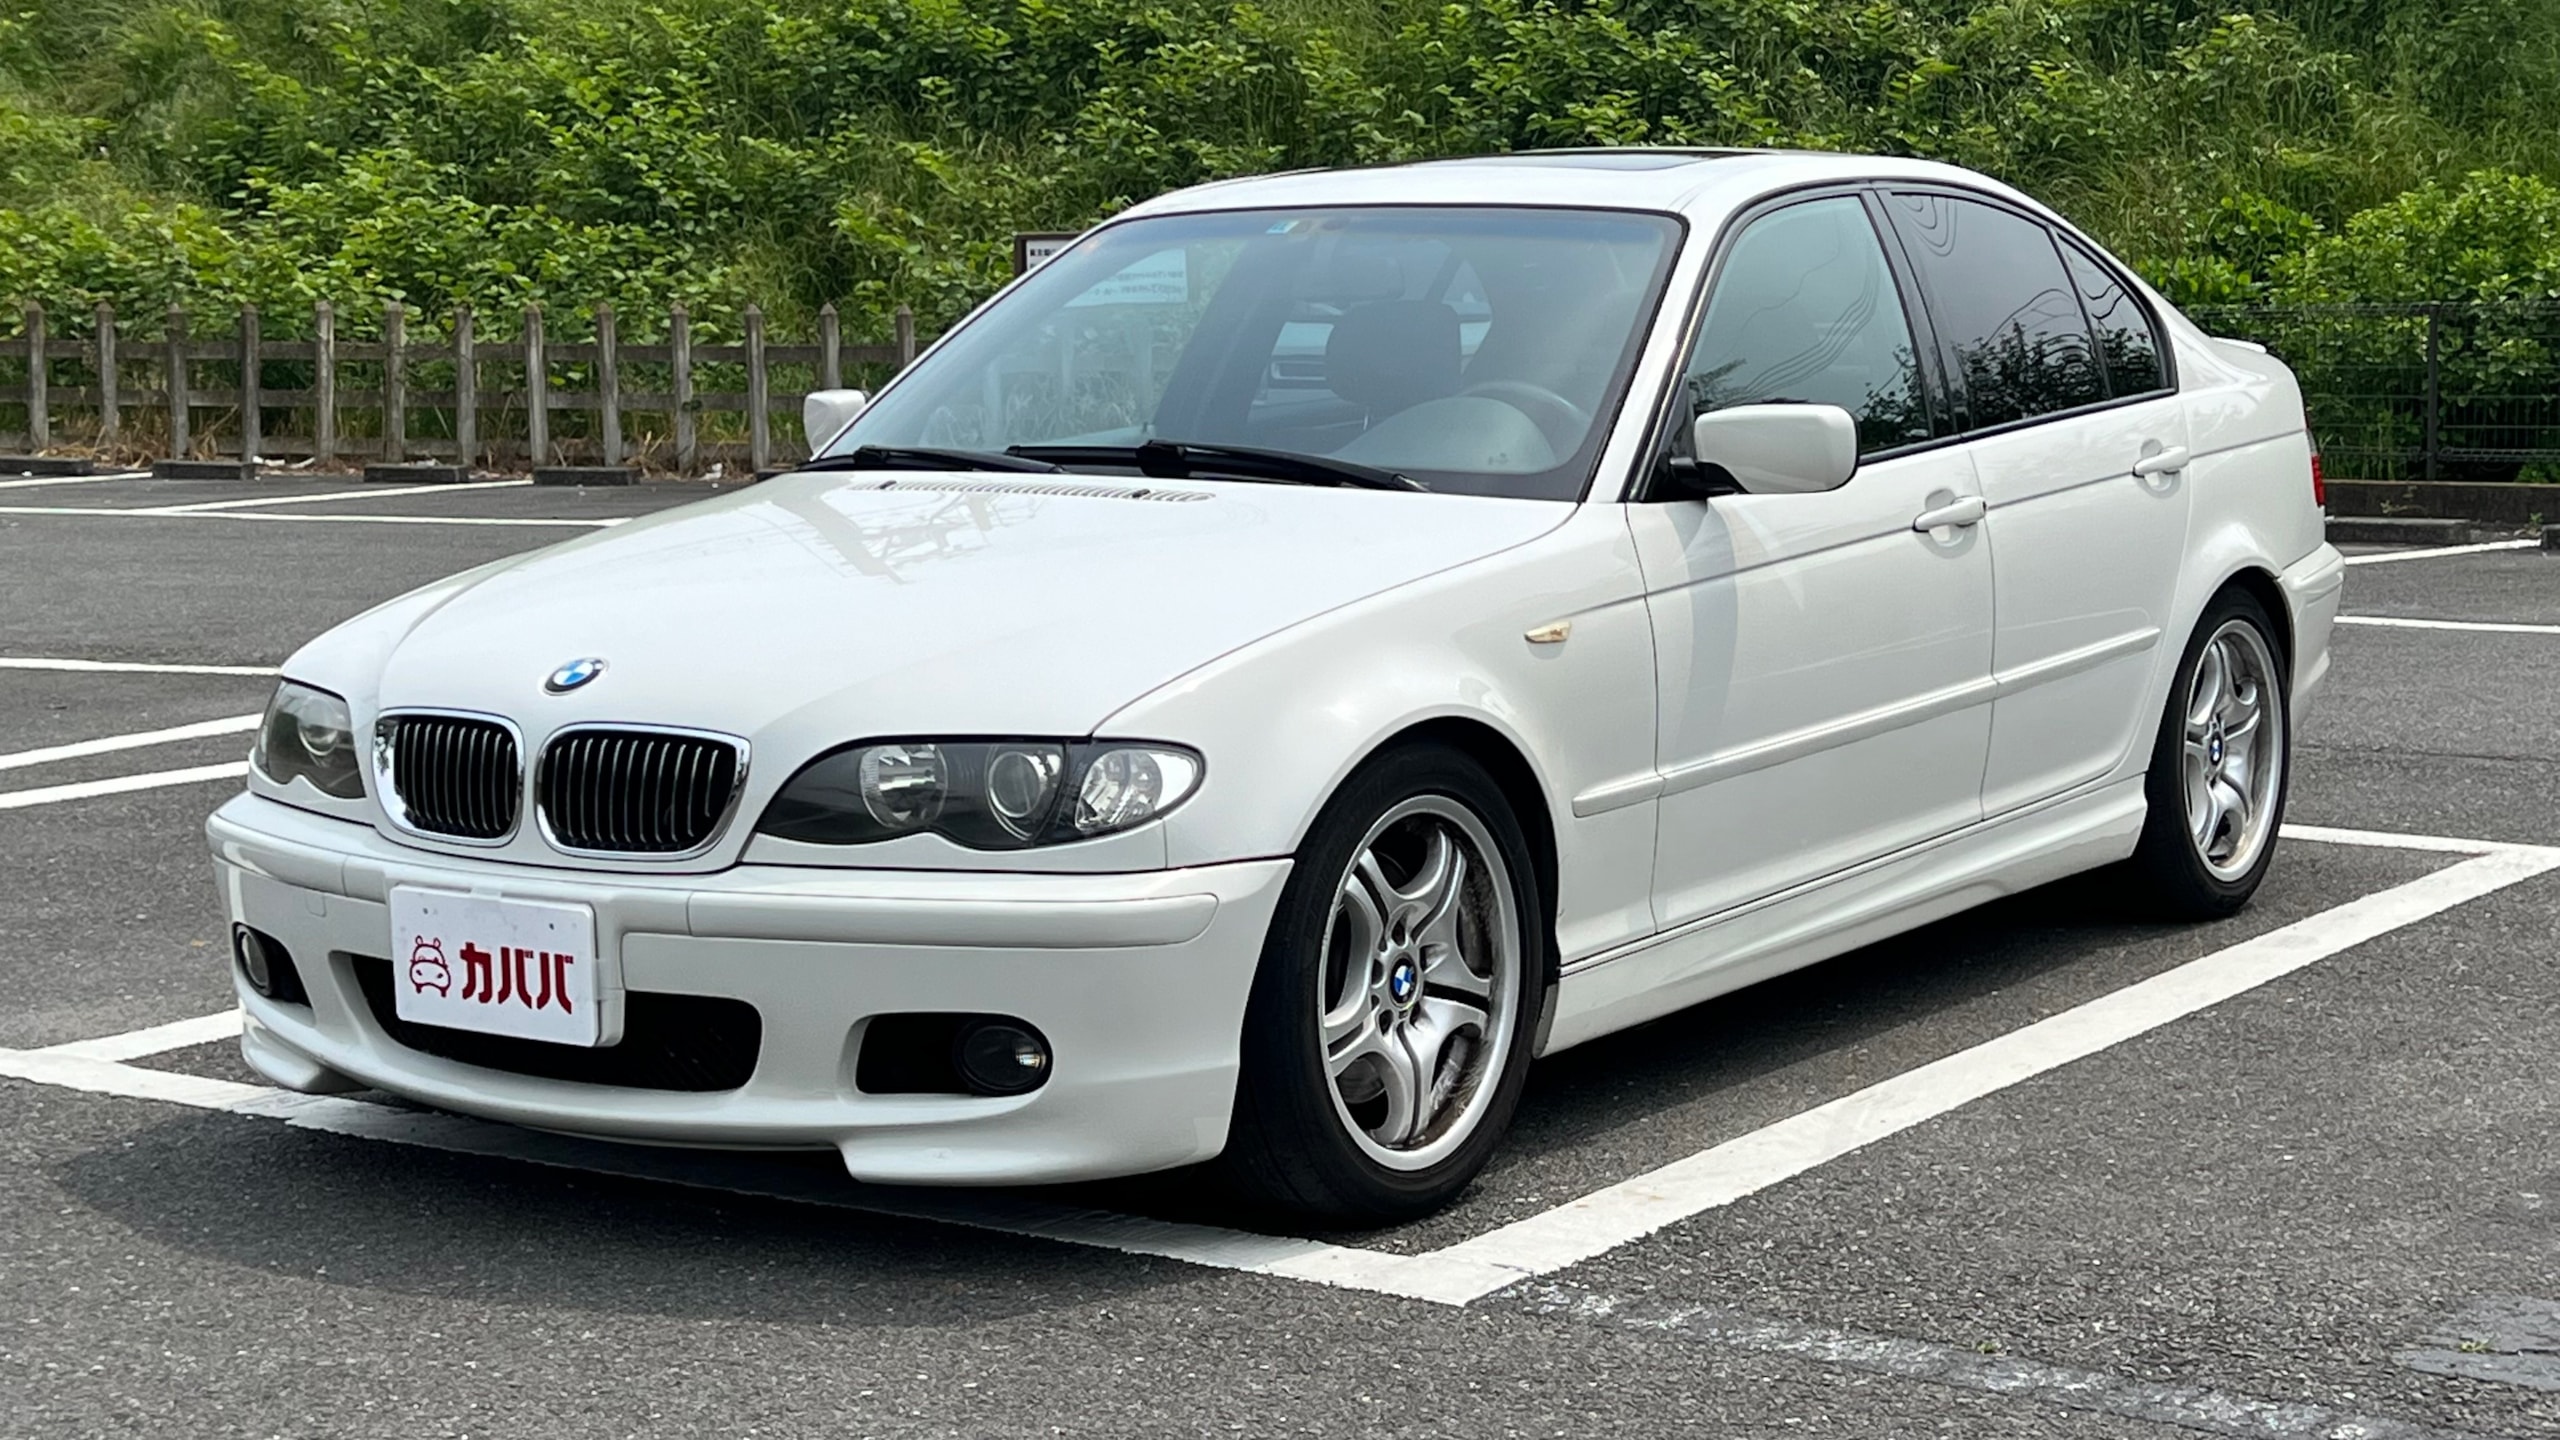 3シリーズ 330i Mスポーツ(BMW)2004年式 155万円の中古車 - 自動車 